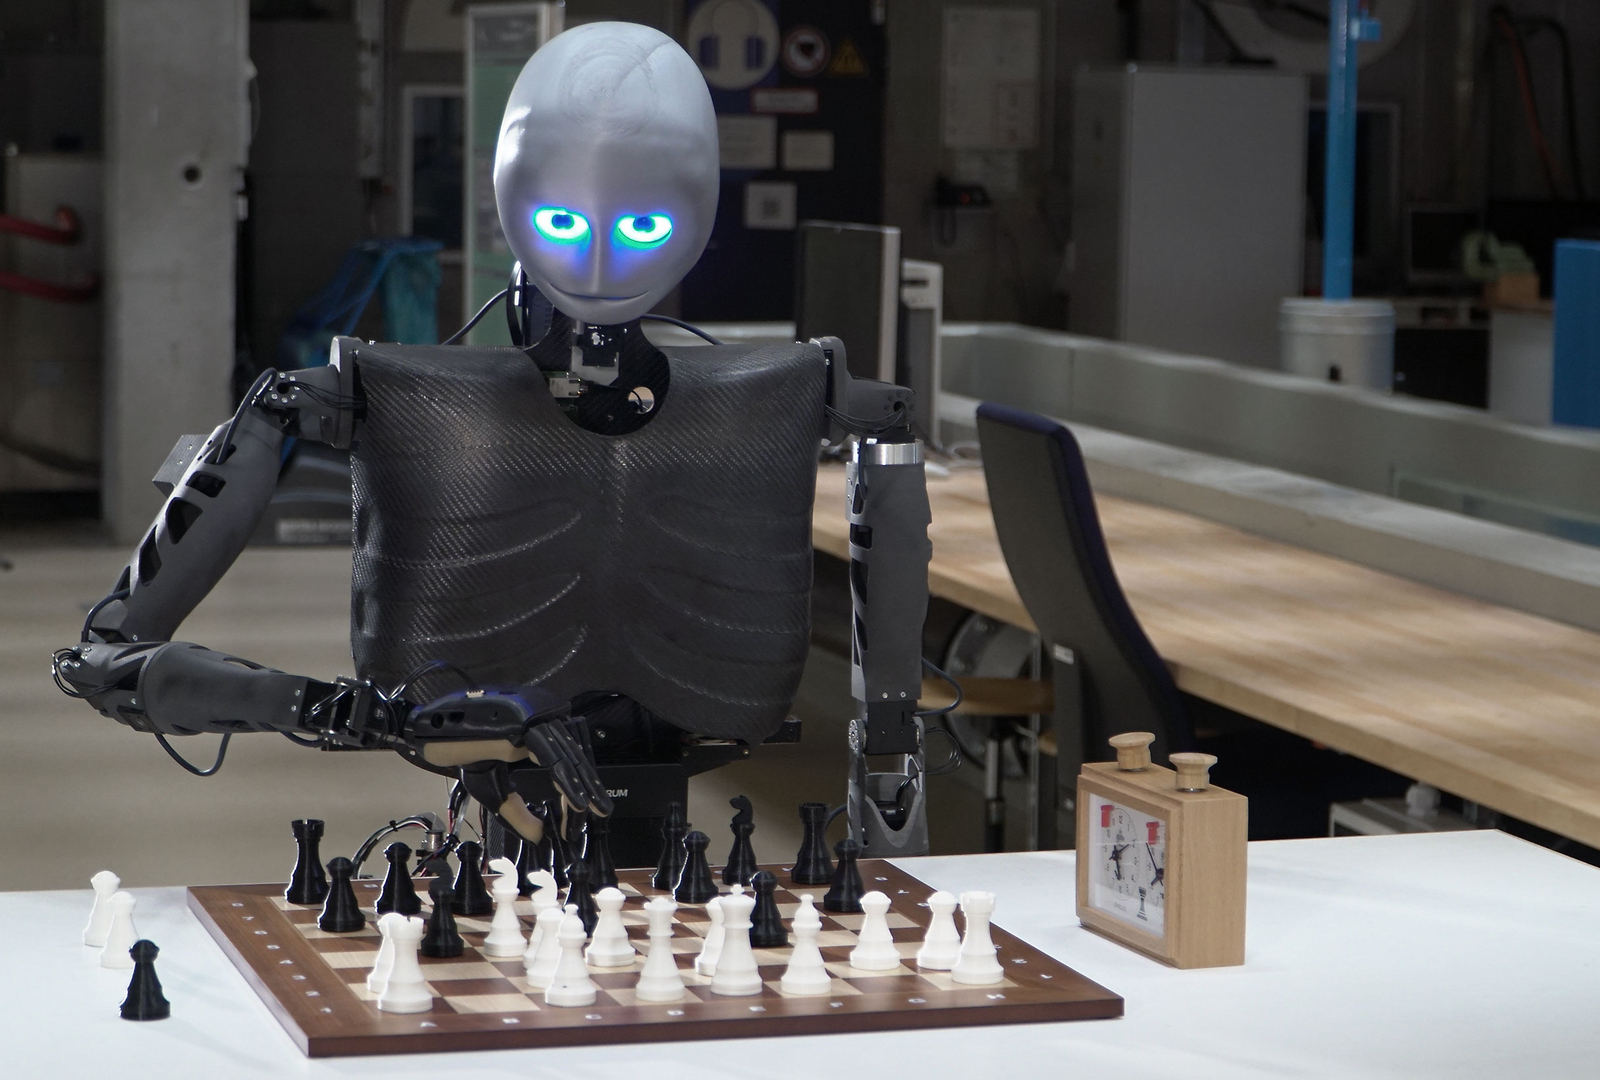 Der humanoide Roboter Sweaty sitzt an einem Tisch, vor sich ein Schachbrett mit Figuren, rechts davon eine Schachuhr